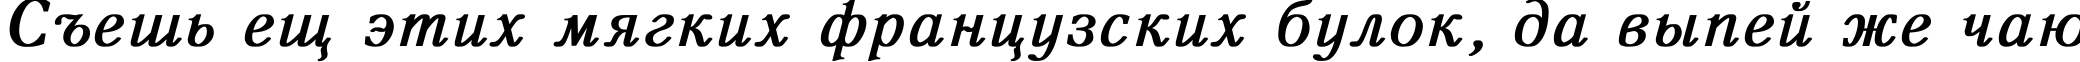 Пример написания шрифтом Antiqua Bold Italic текста на русском